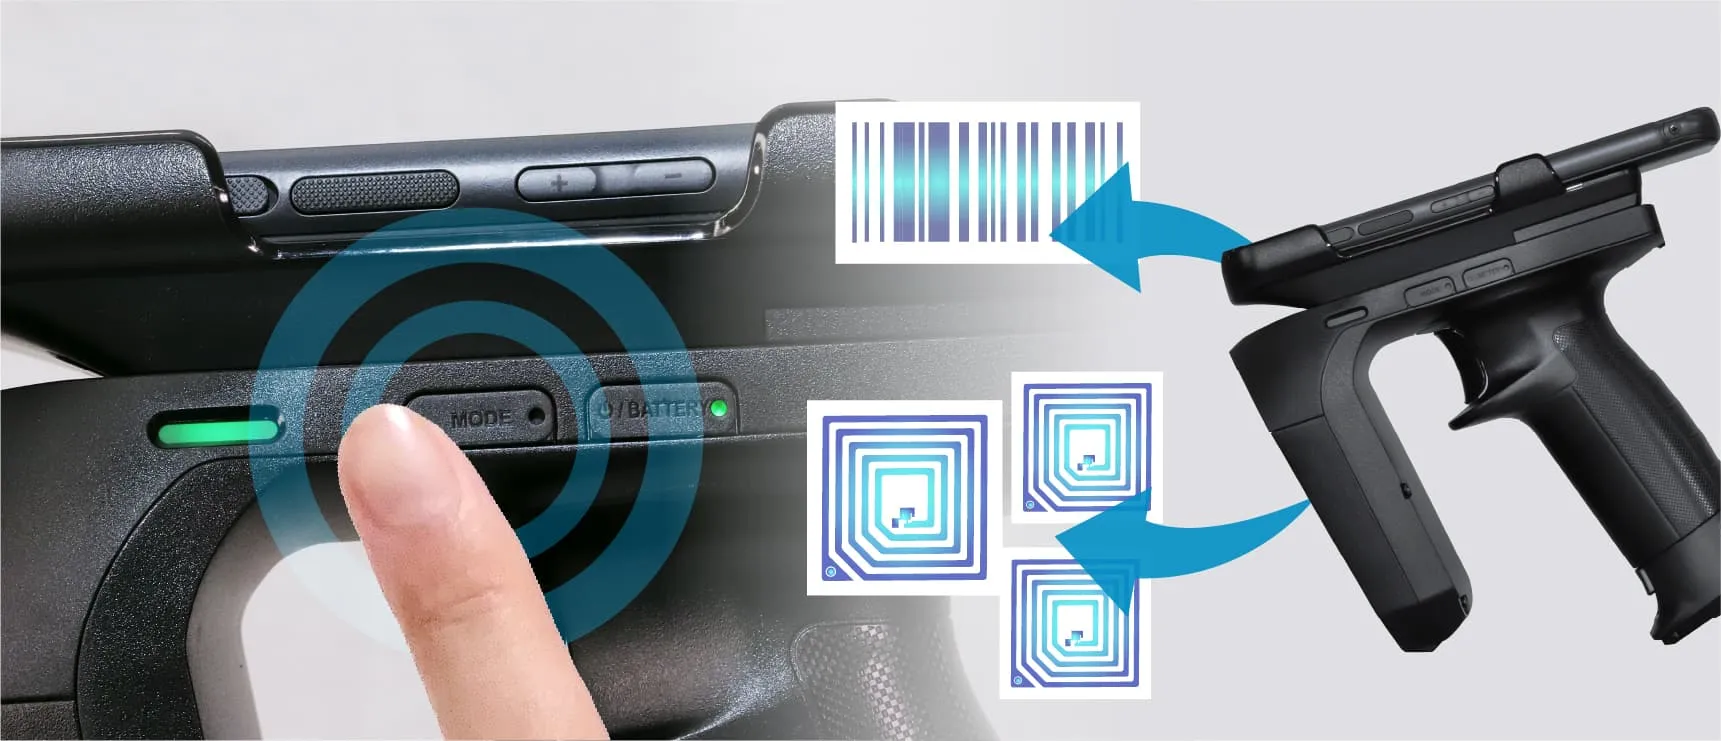 「モード切替ボタン」から、業務用モバイルのスキャナ機能にアクセスし、RFIDとバーコードのモードチェンジをシームレスに行えます。